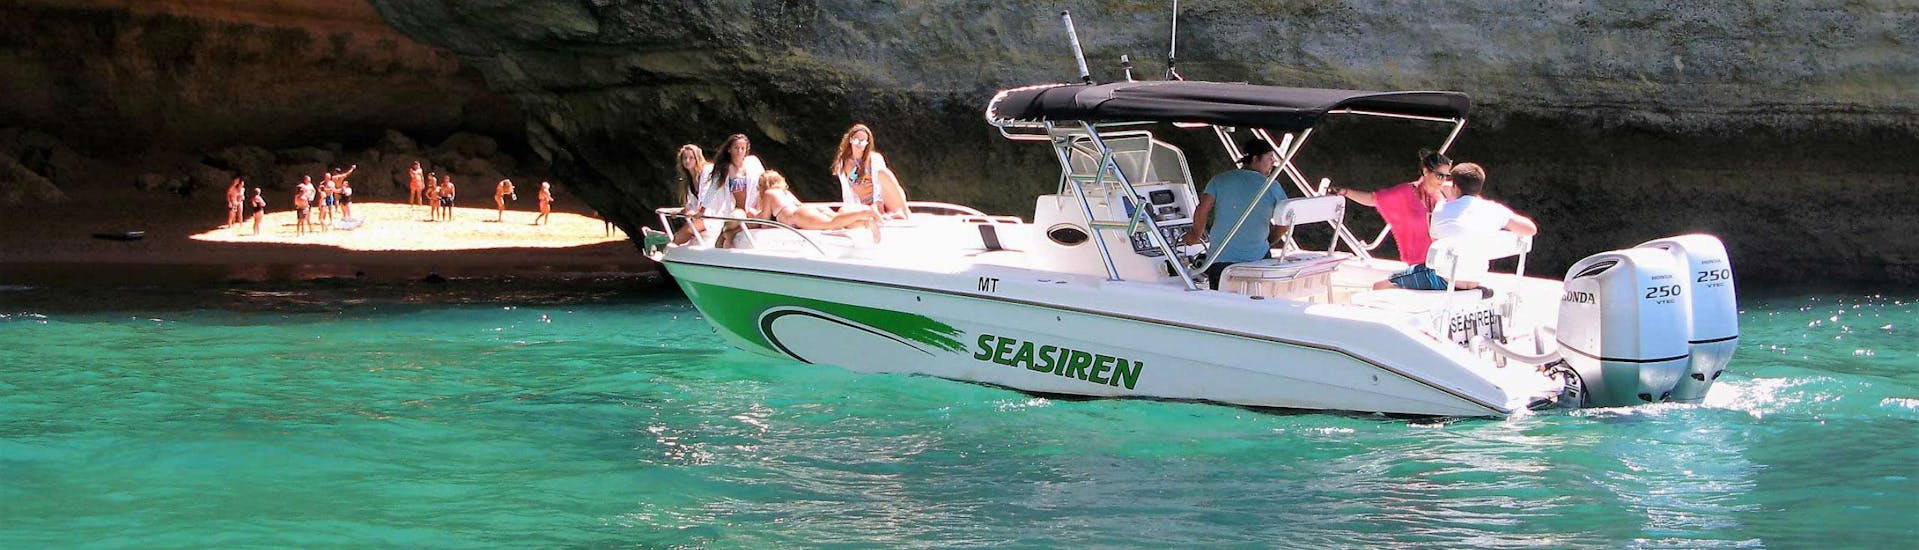 La lancha de Seasiren Tours se acerca a la cueva de Benagil durante el paseo en barco - Cueva de Benagil.